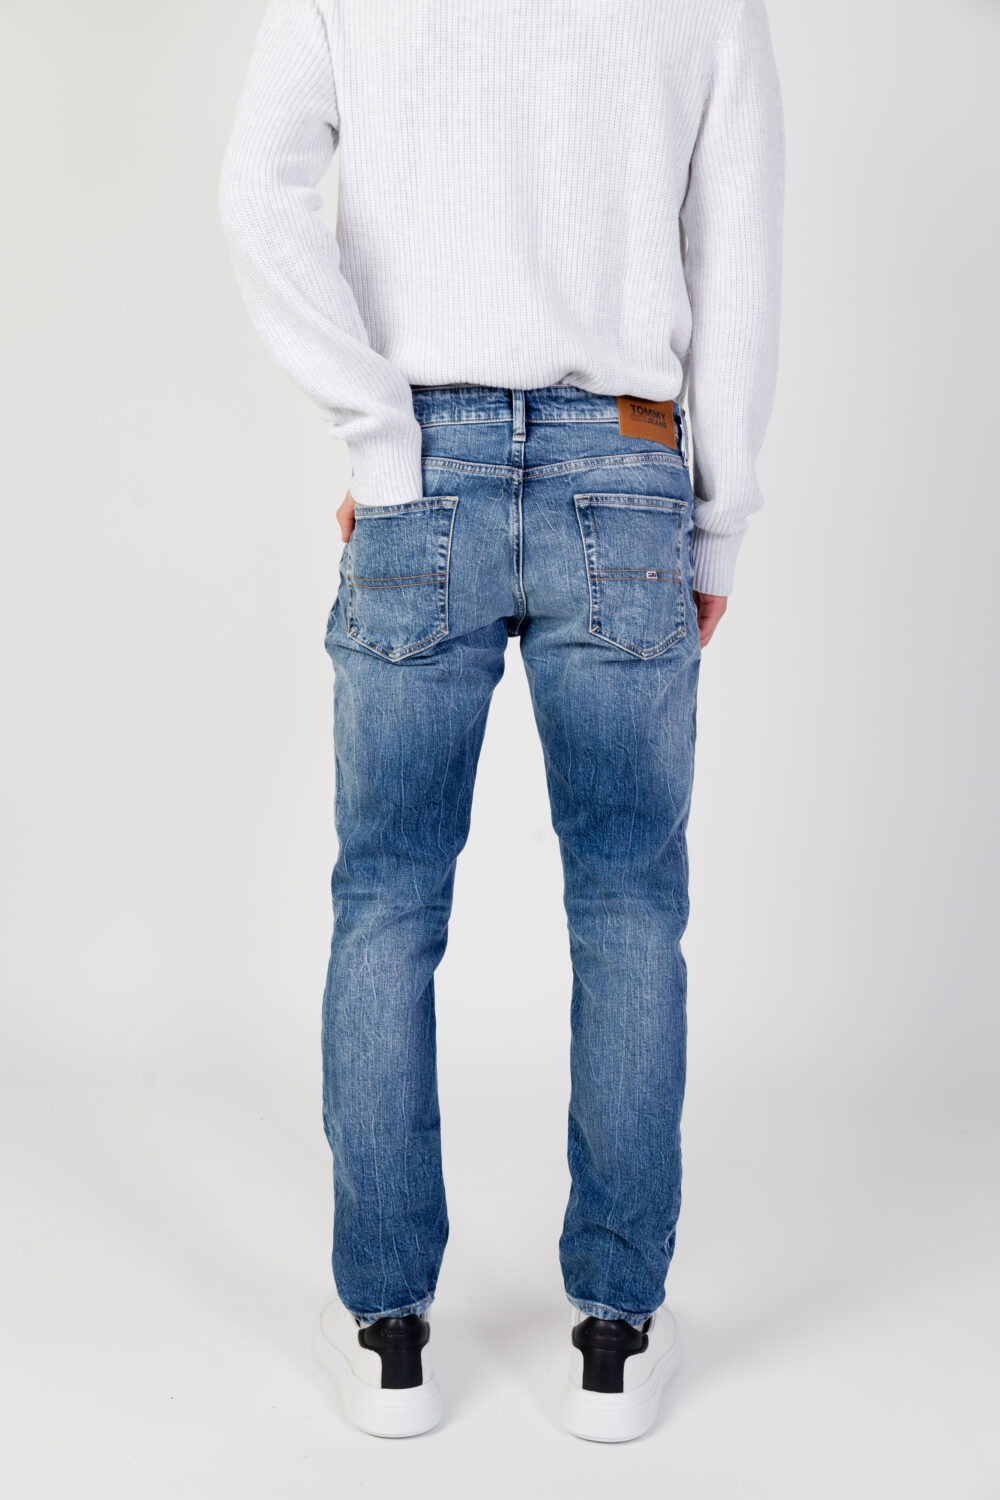 Jeans Tapered Tommy Hilfiger Jeans austin slim tprd dg2 Denim - Foto 3